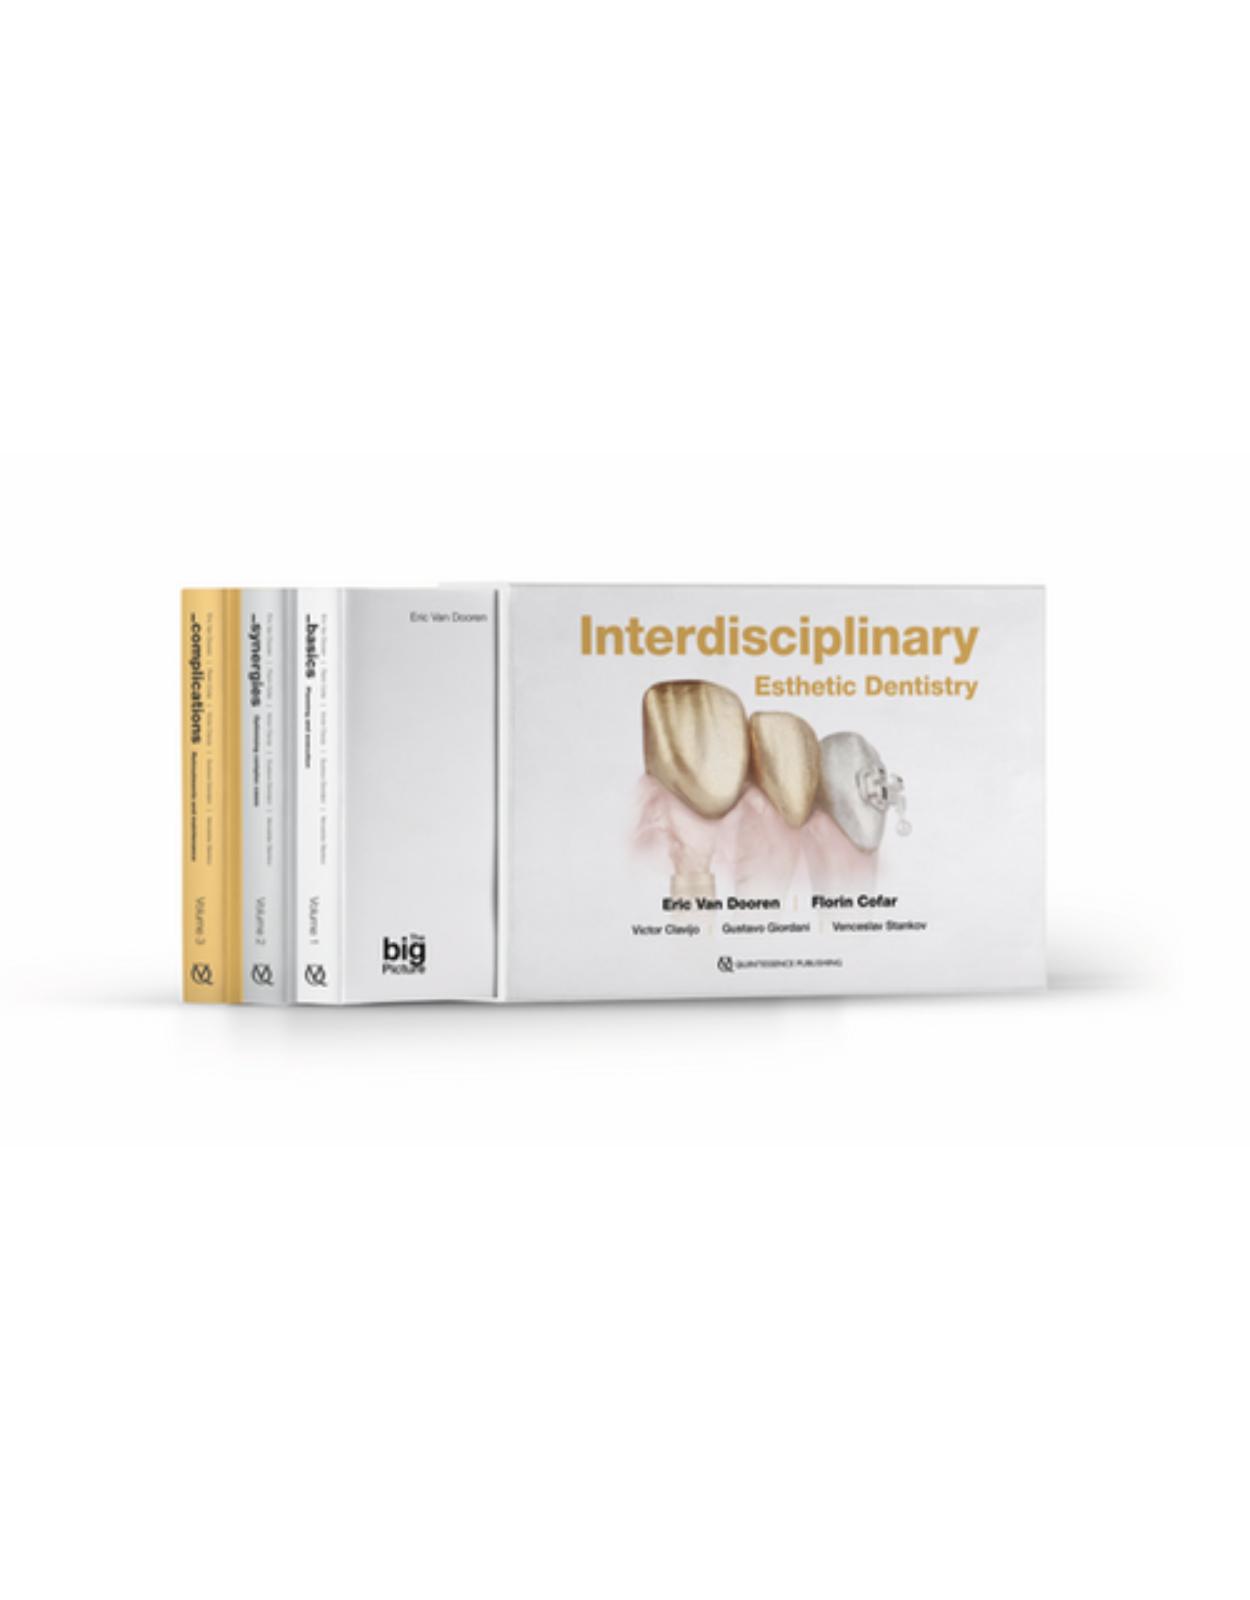 Interdisciplinary Esthetic Dentistry